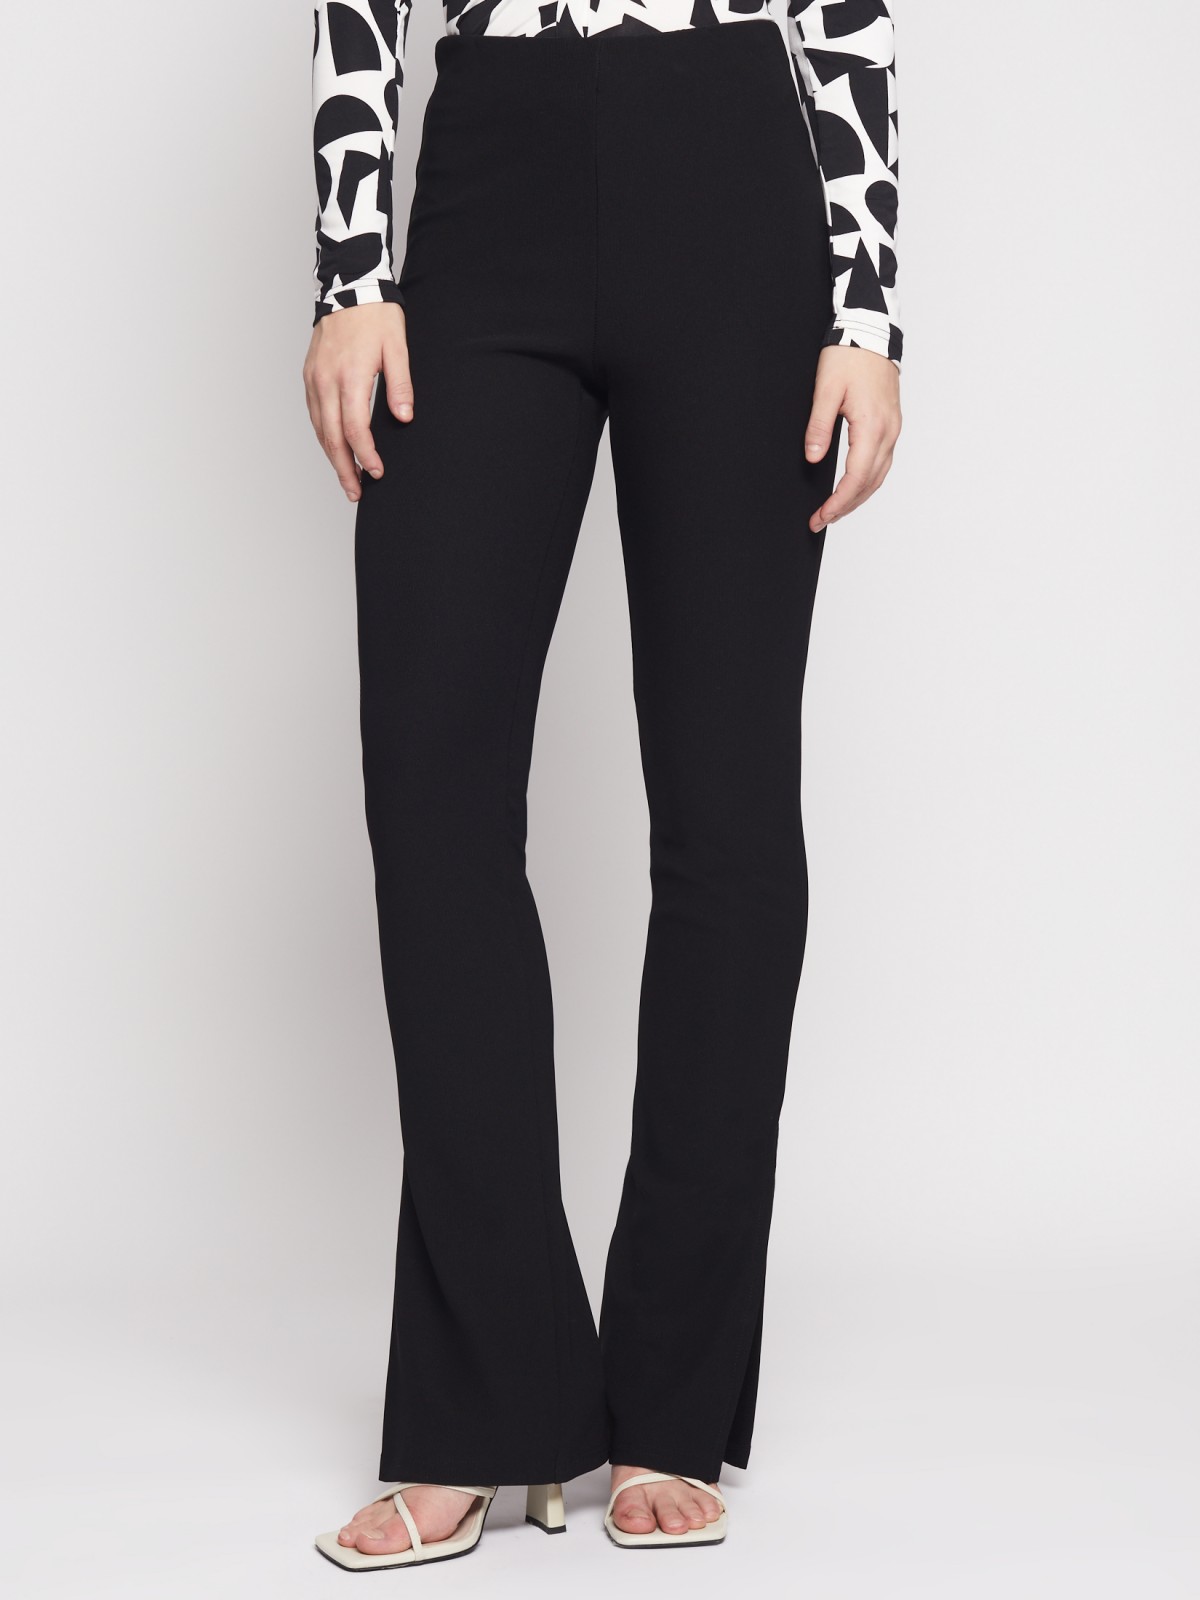 Трикотажные брюки клеш с разрезами внизу zolla 023137662011, цвет черный, размер XS - фото 2